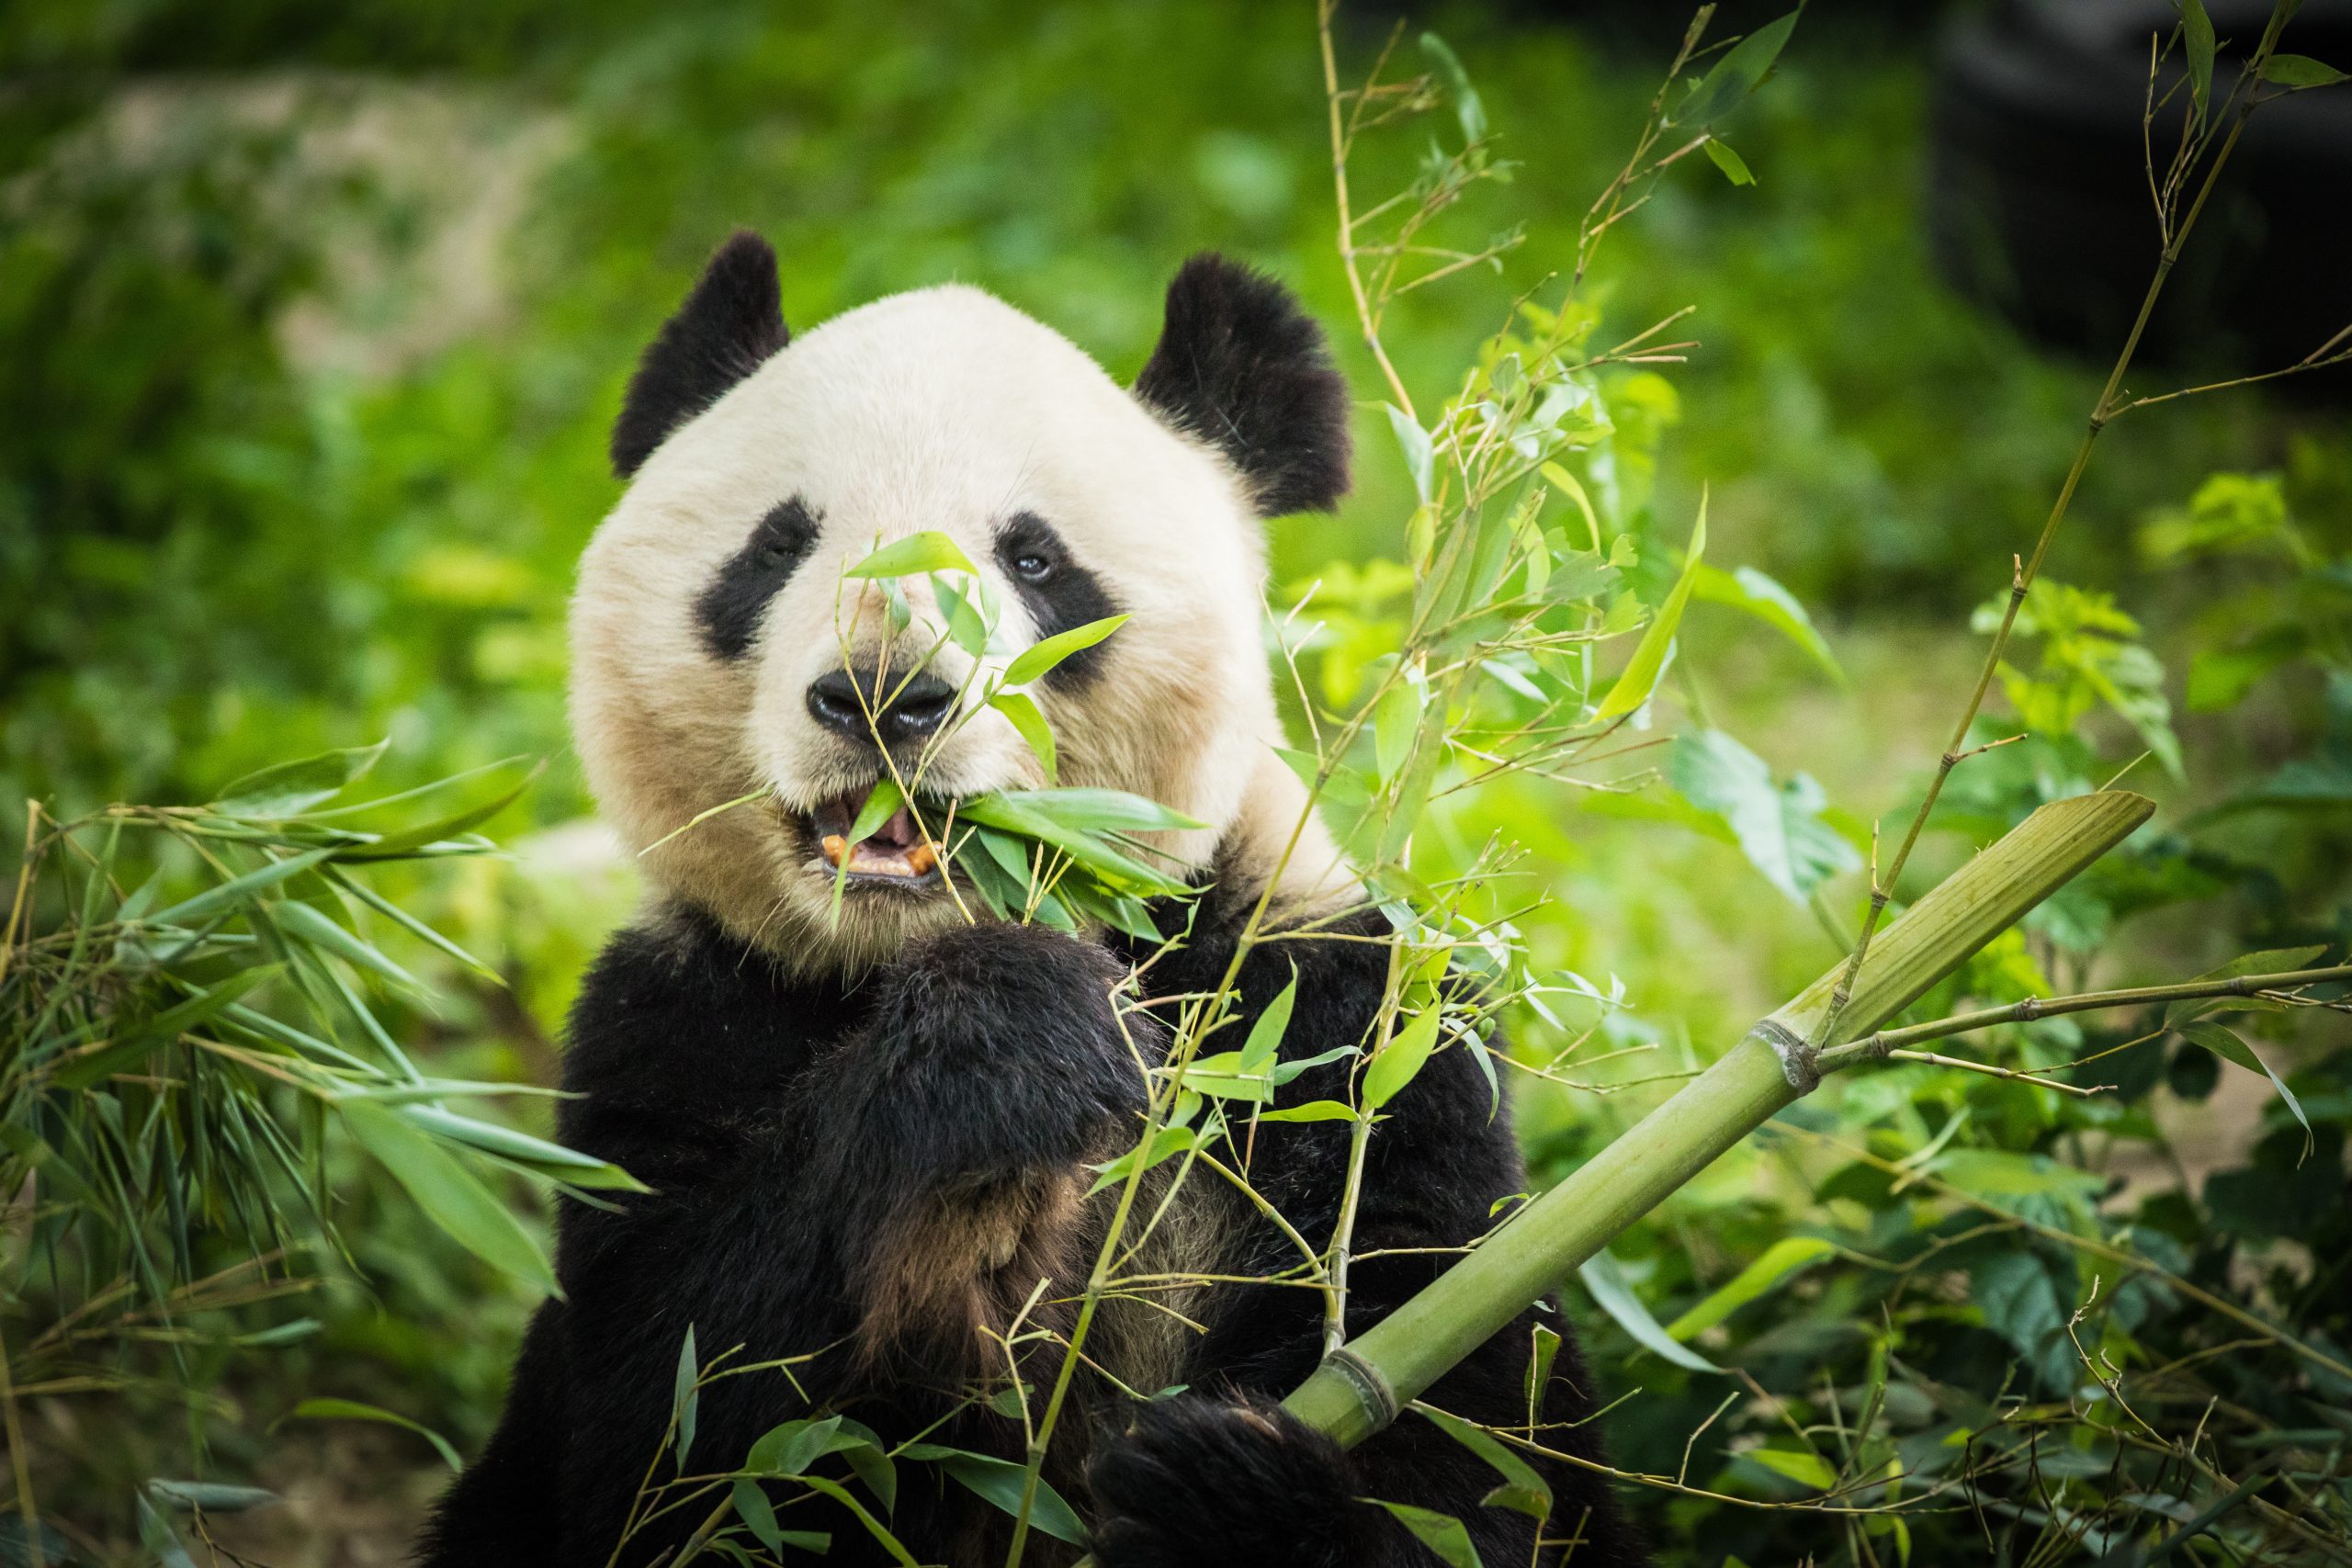 Panda Bear eating bamboo shoot